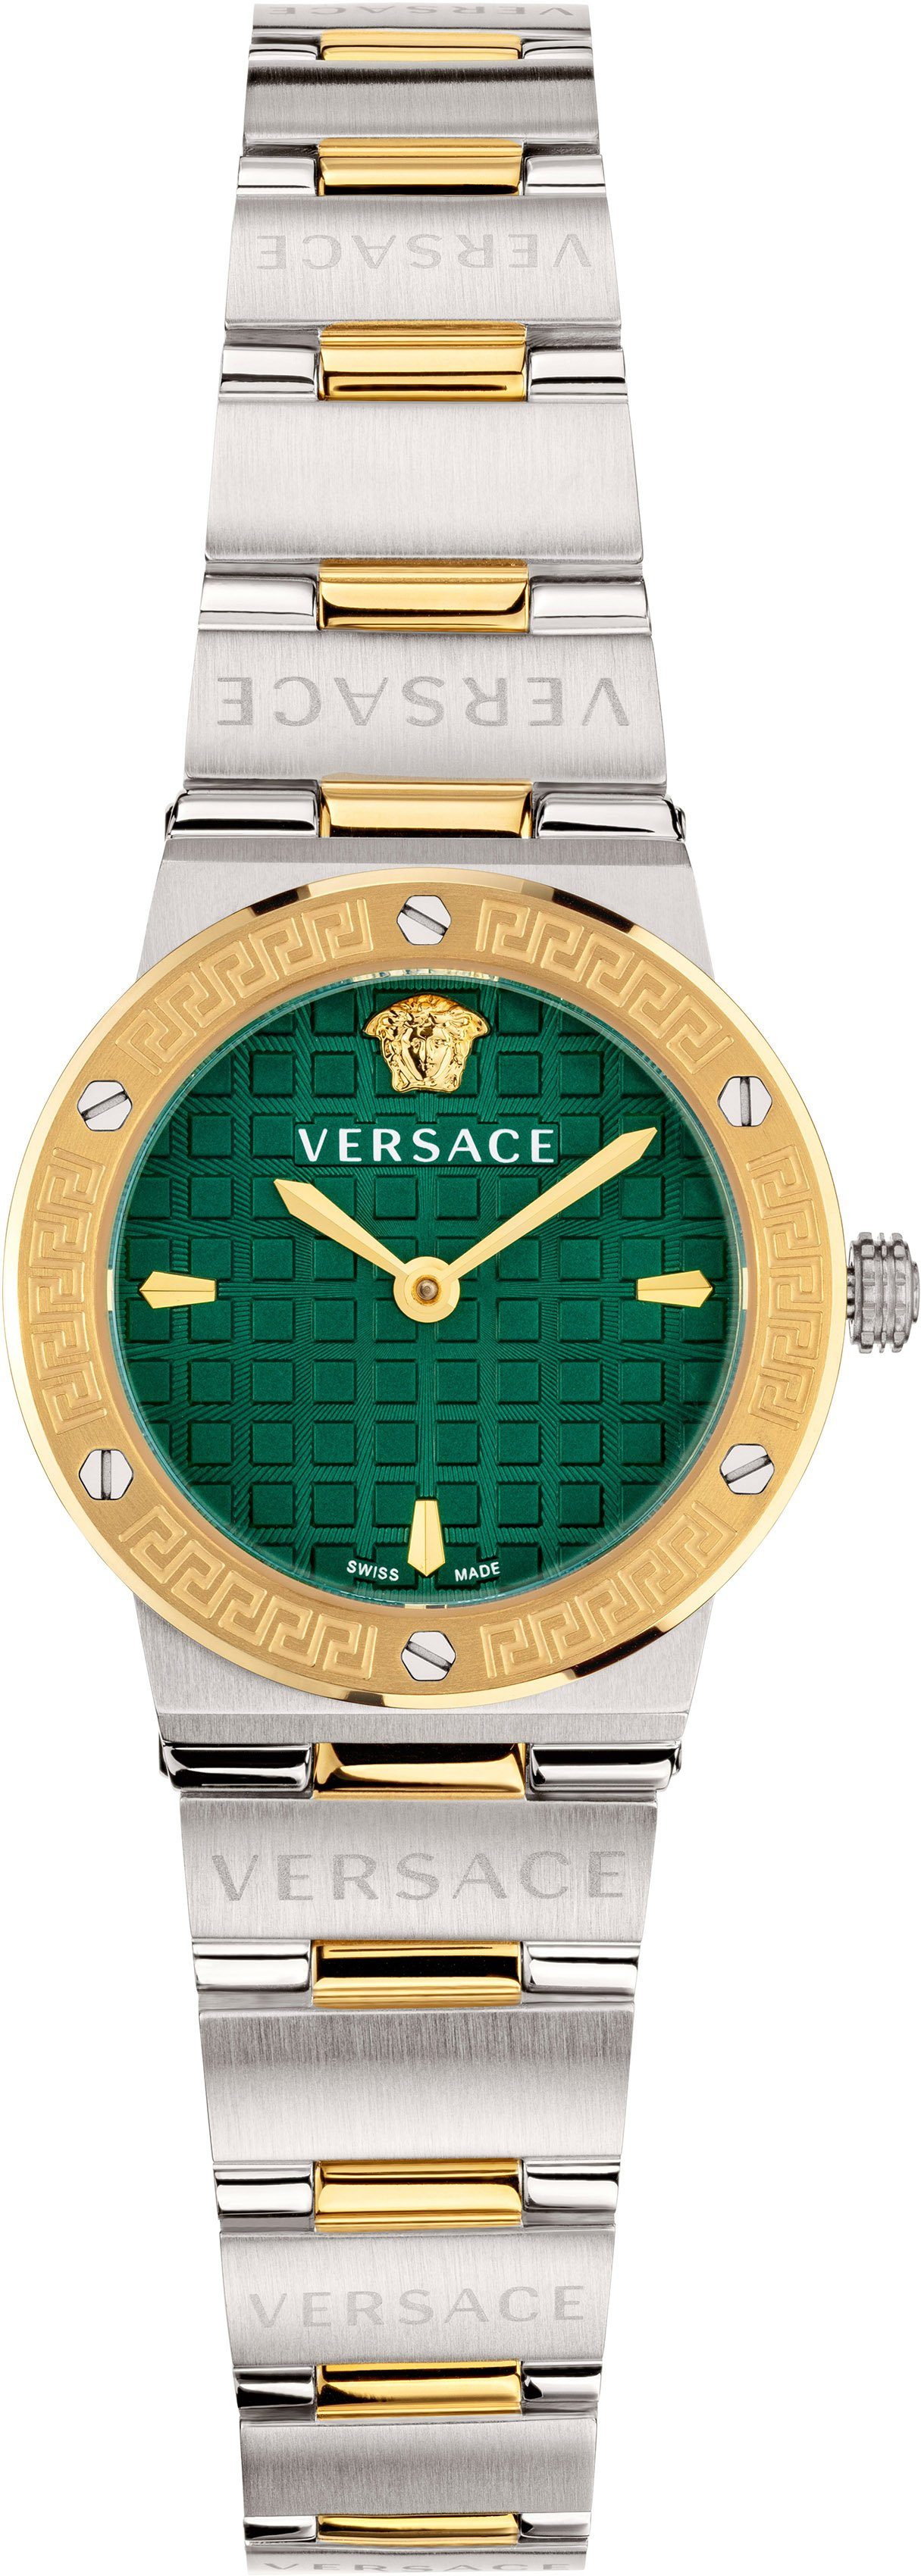 Versace Damen Uhren online kaufen | OTTO